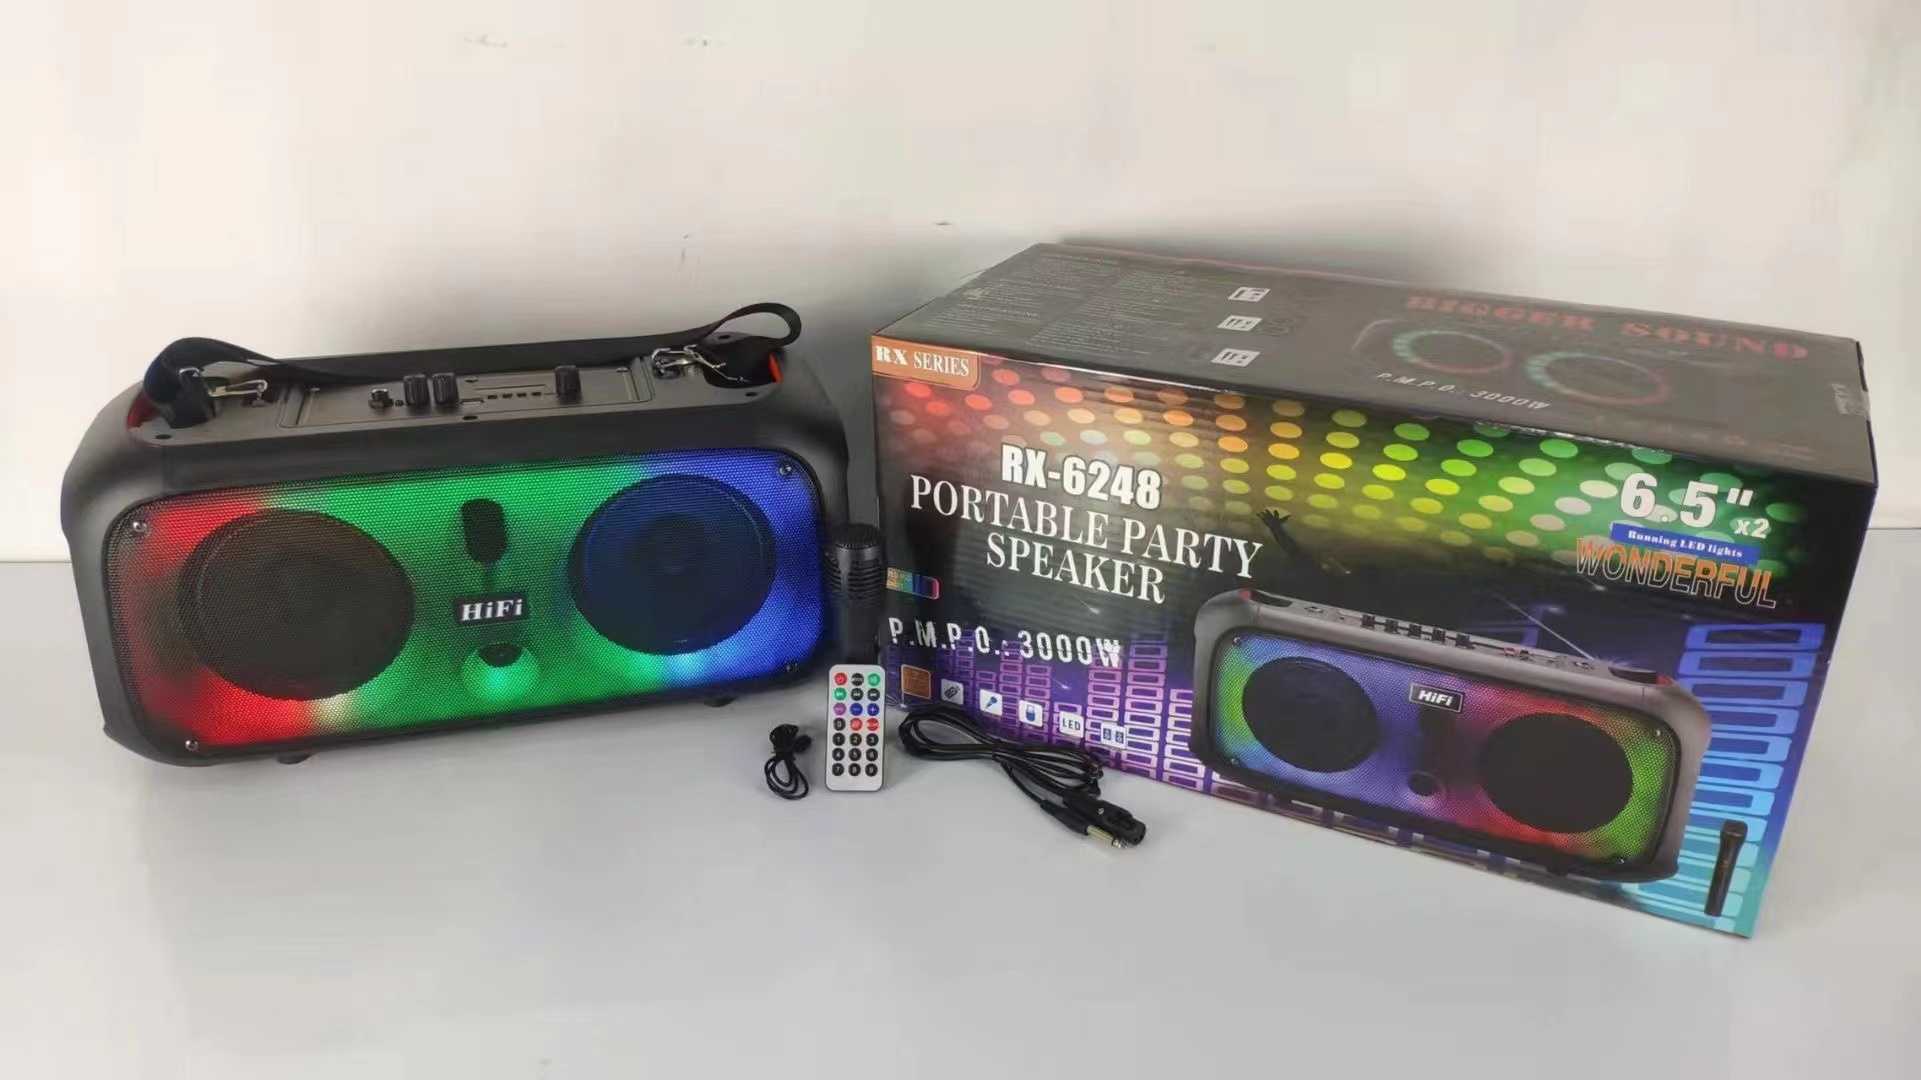 Portable subwoofer speaker - RX-6248 - 959685